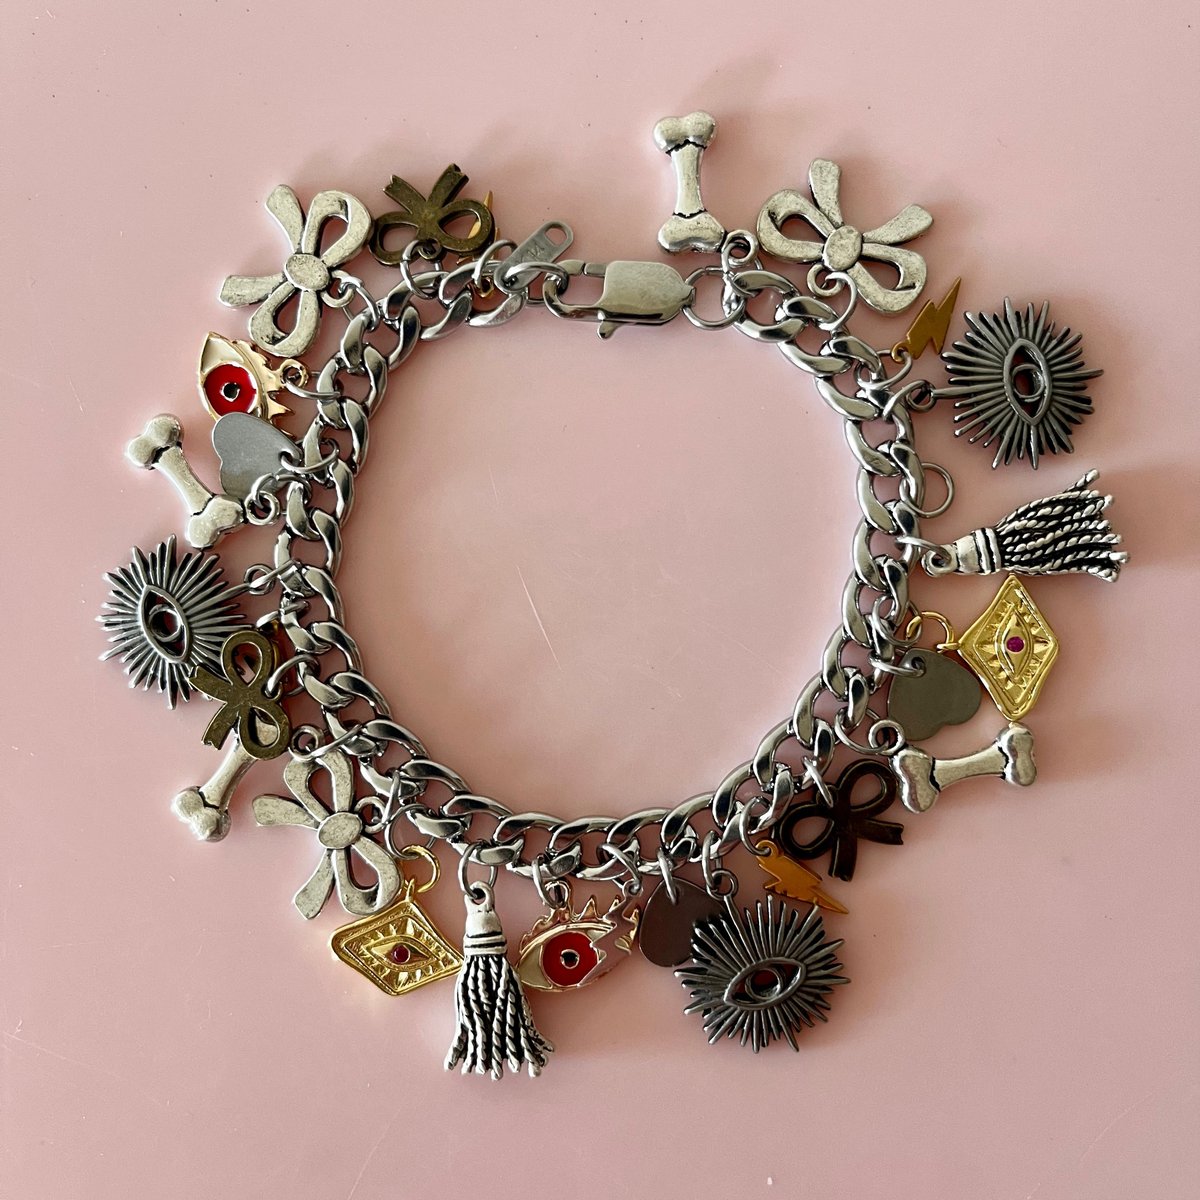 Toggle Bracelet with a Flower charm / Penny Foggo